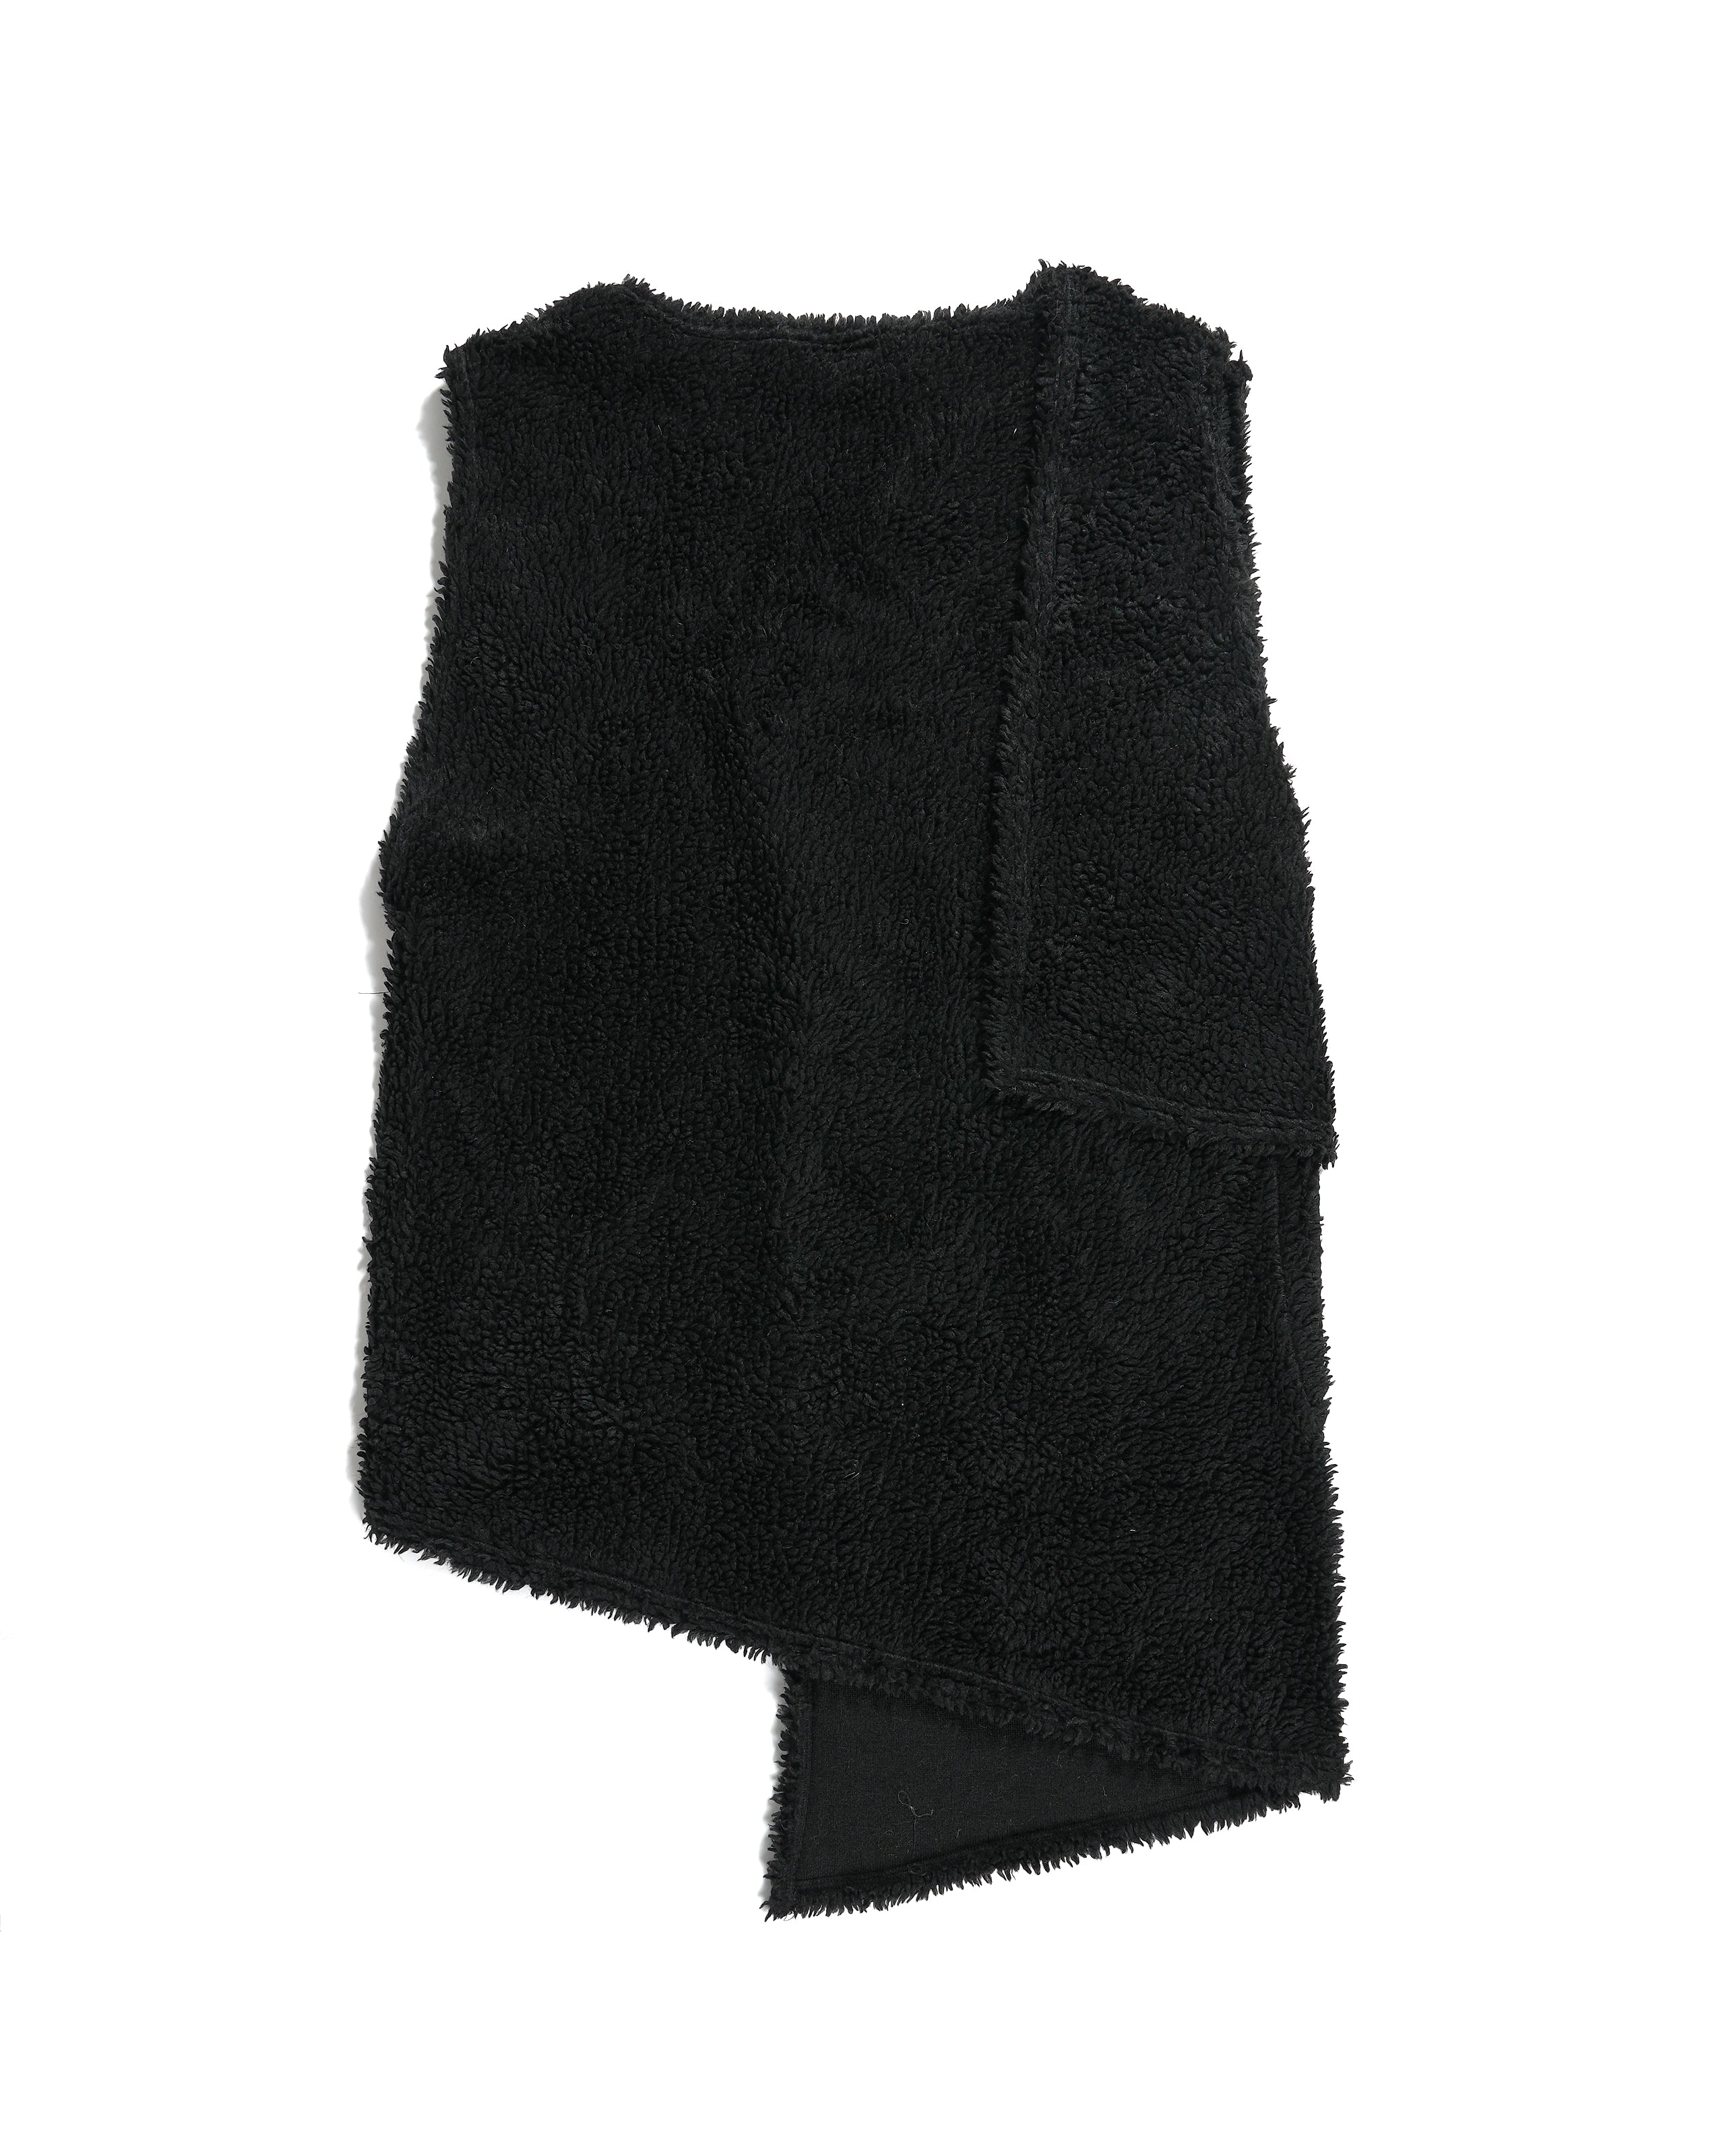 Wrap Knit Vest - Black Polyester Shearling